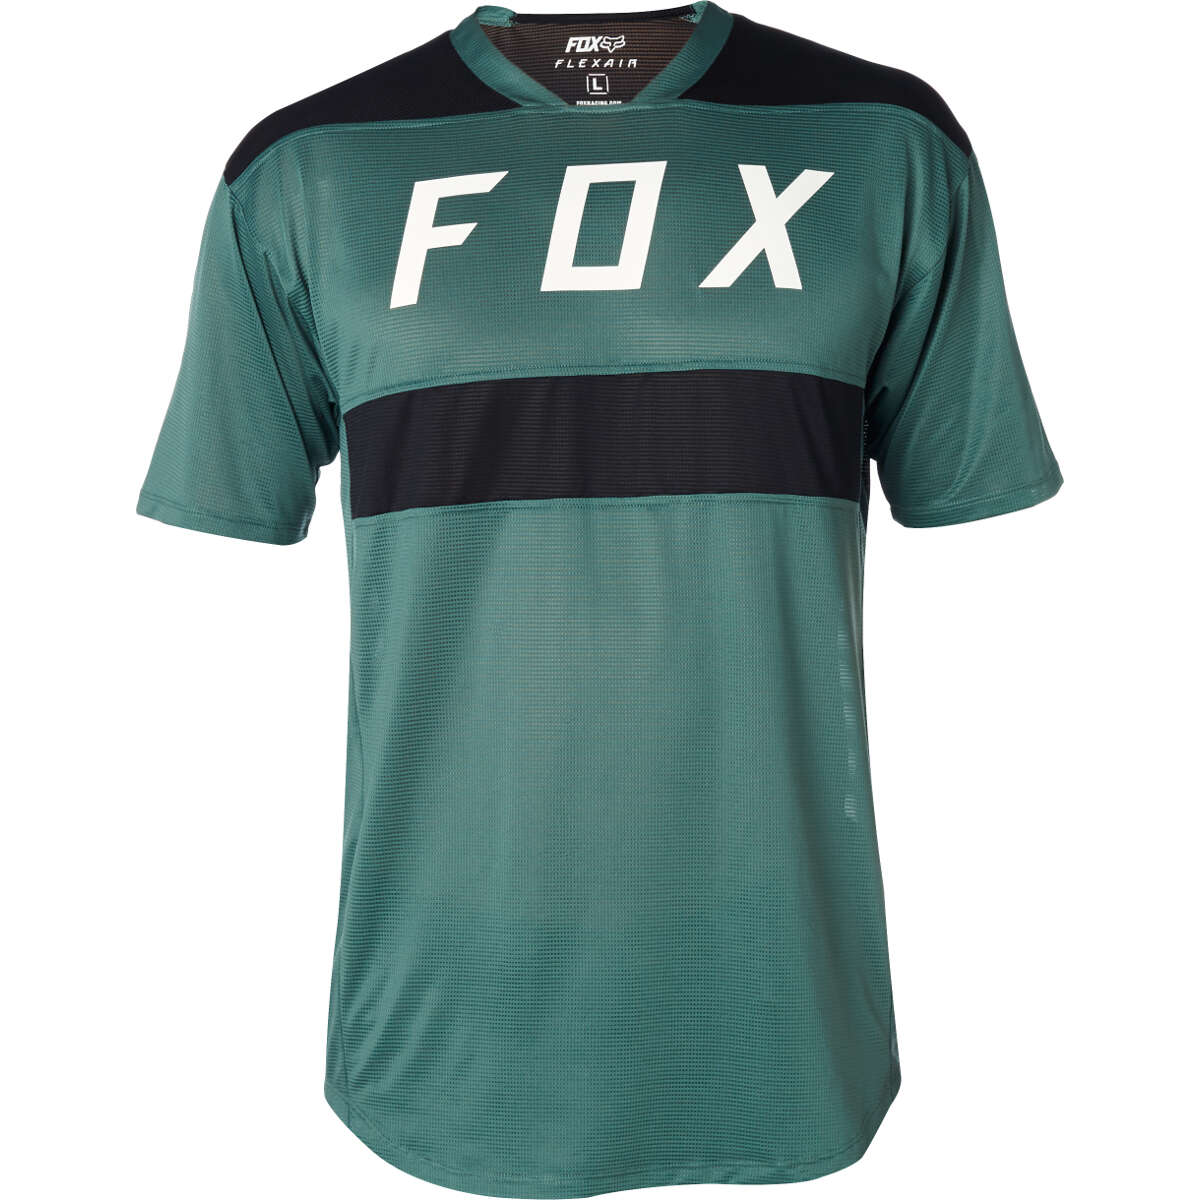 Fox T-Shirt Flexair Emerald